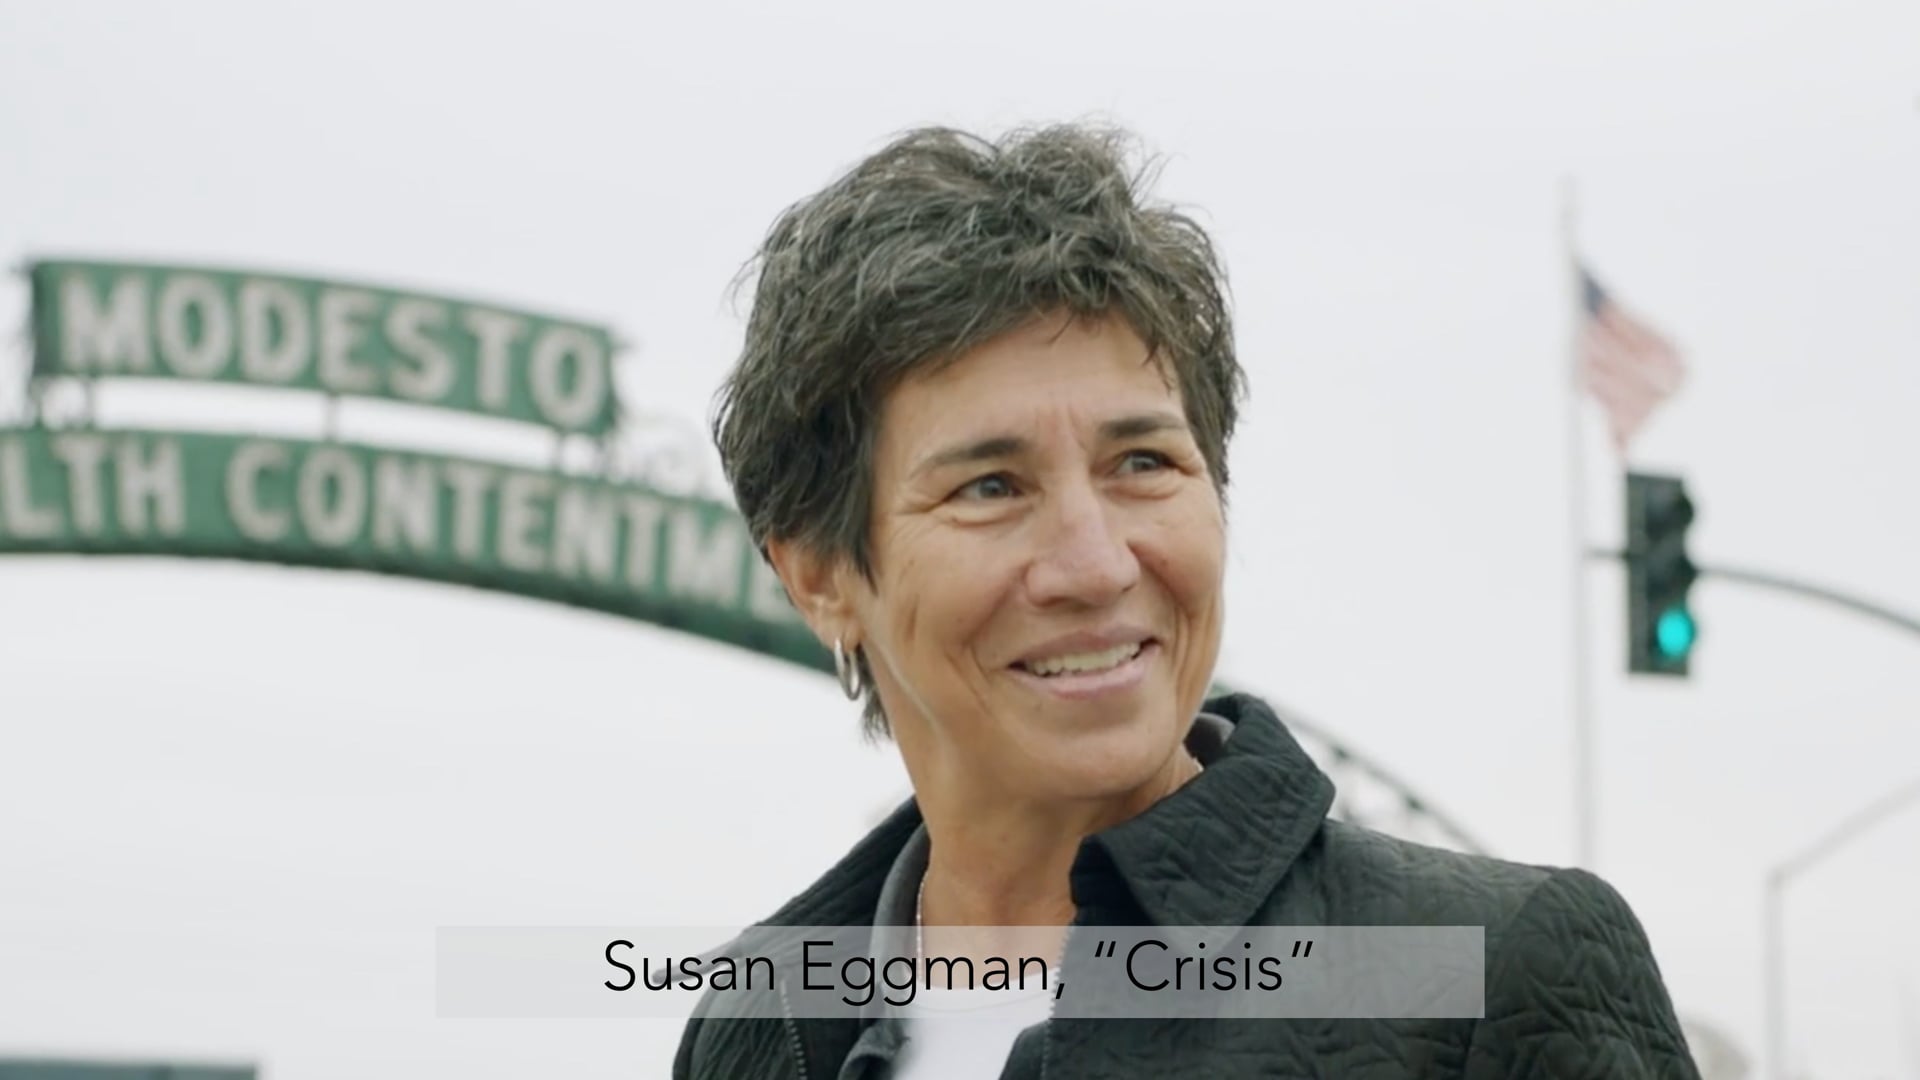 Susan Eggman, “Crisis”